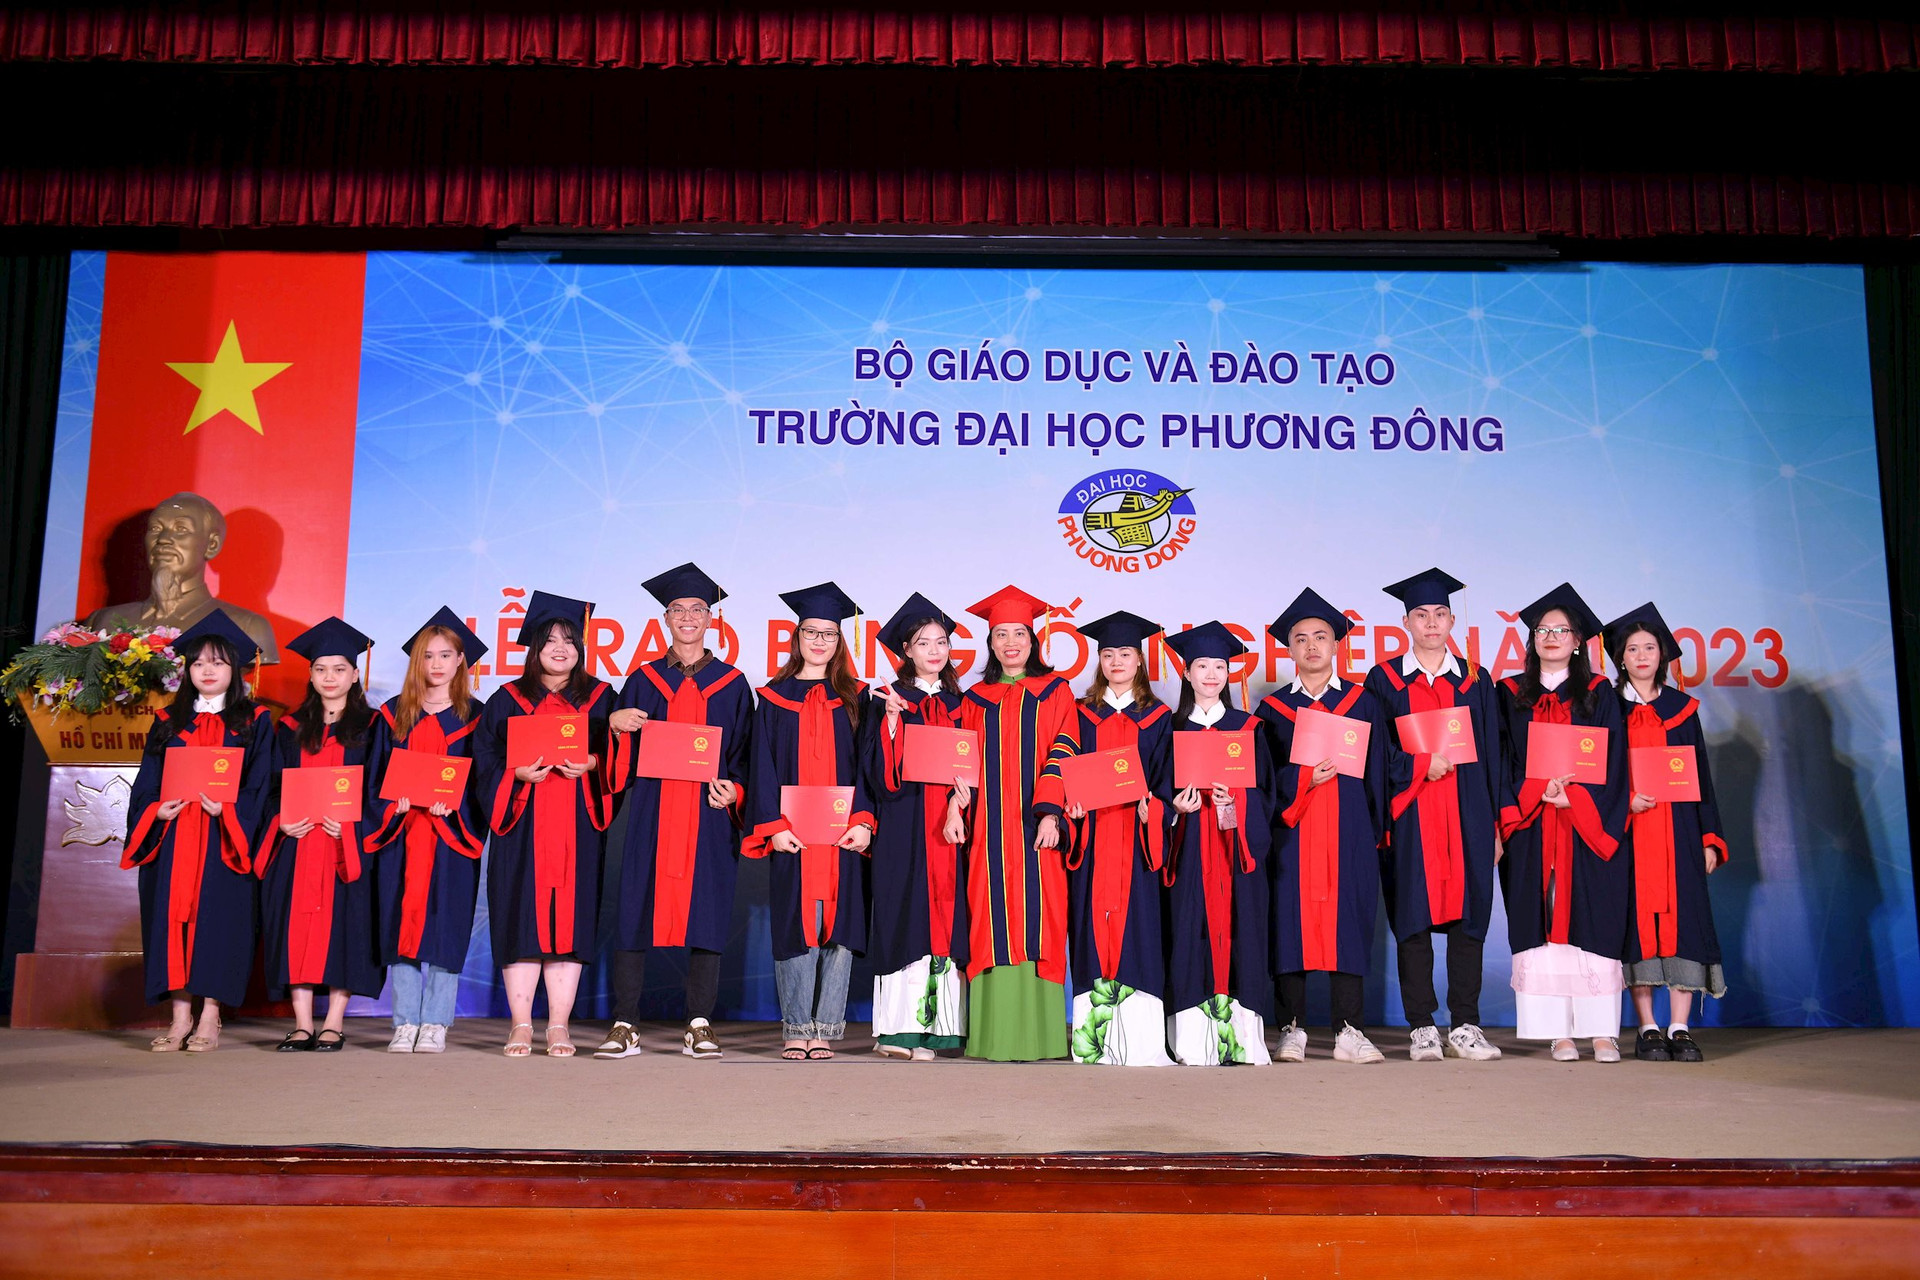 Trường ĐH Phương Đông trao bằng tốt nghiệp cho gần 800 sinh viên - Ảnh 1.